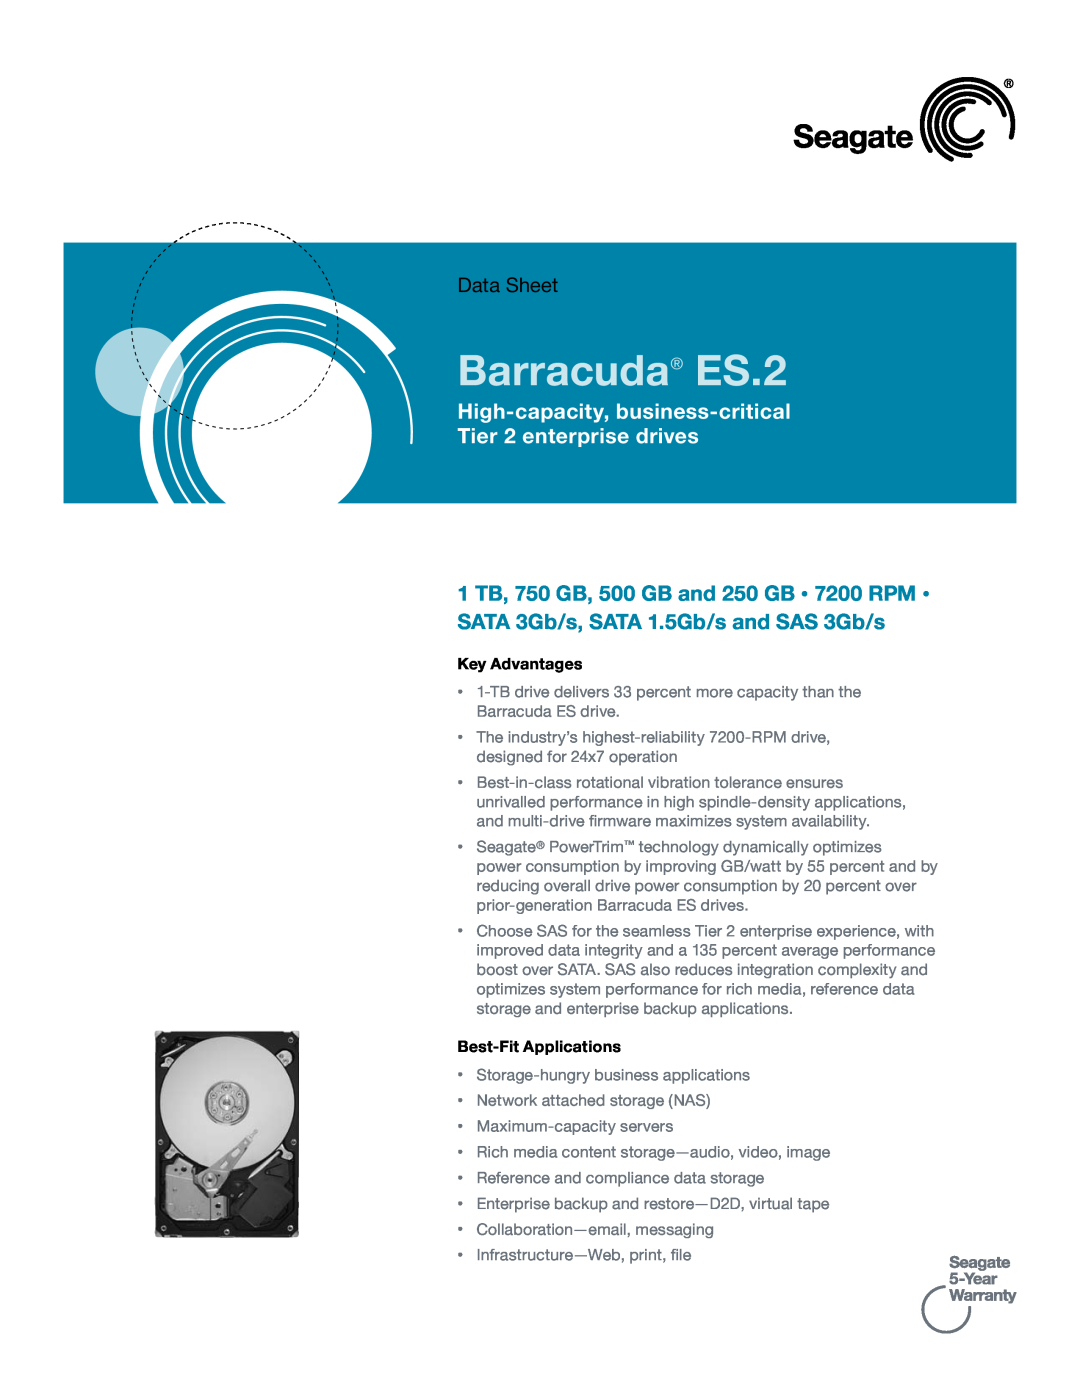 Seagate manual Key Advantages, Best-Fit Applications, Barracuda ES.2, Data Sheet 